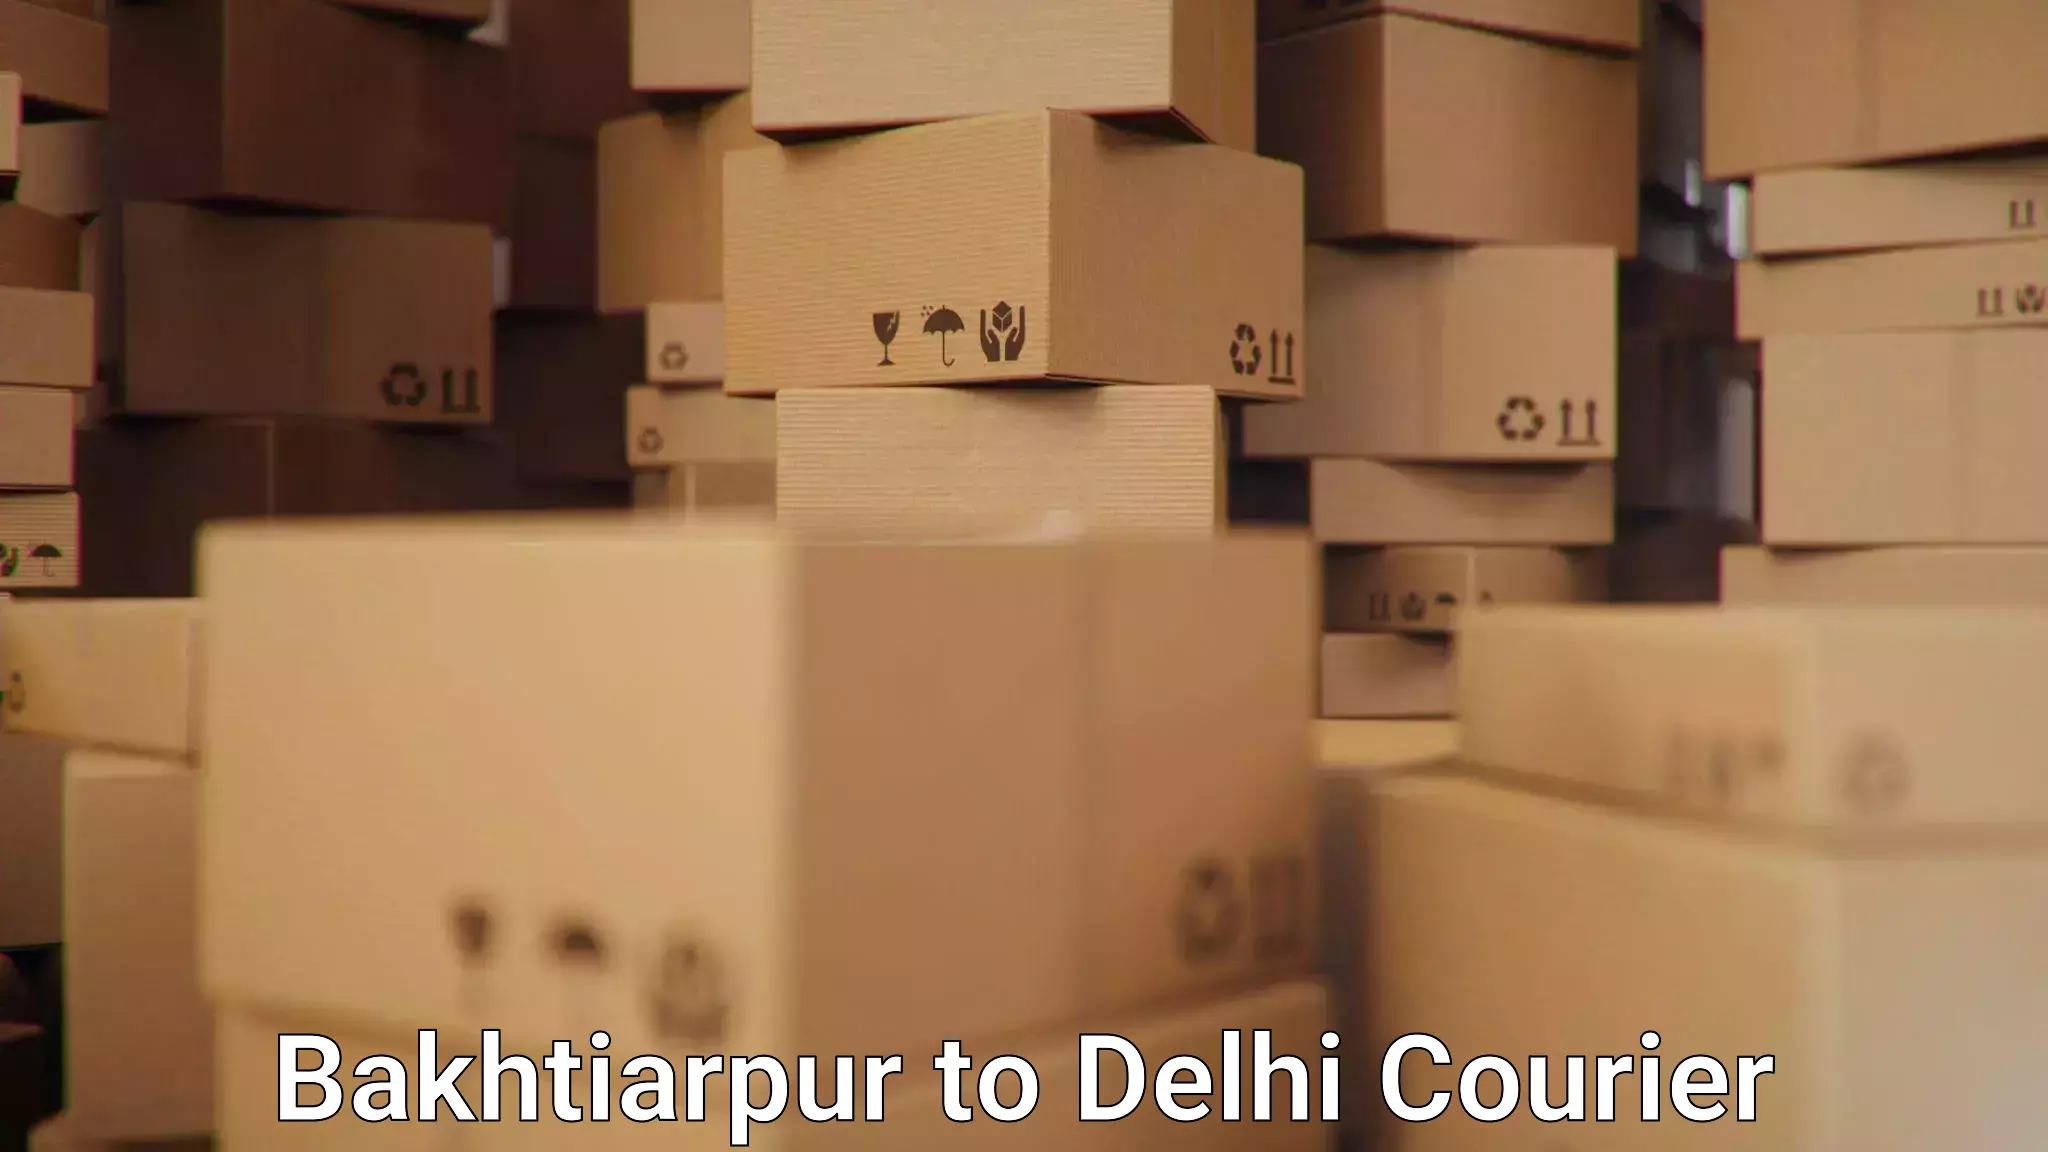 Tracking updates Bakhtiarpur to Delhi